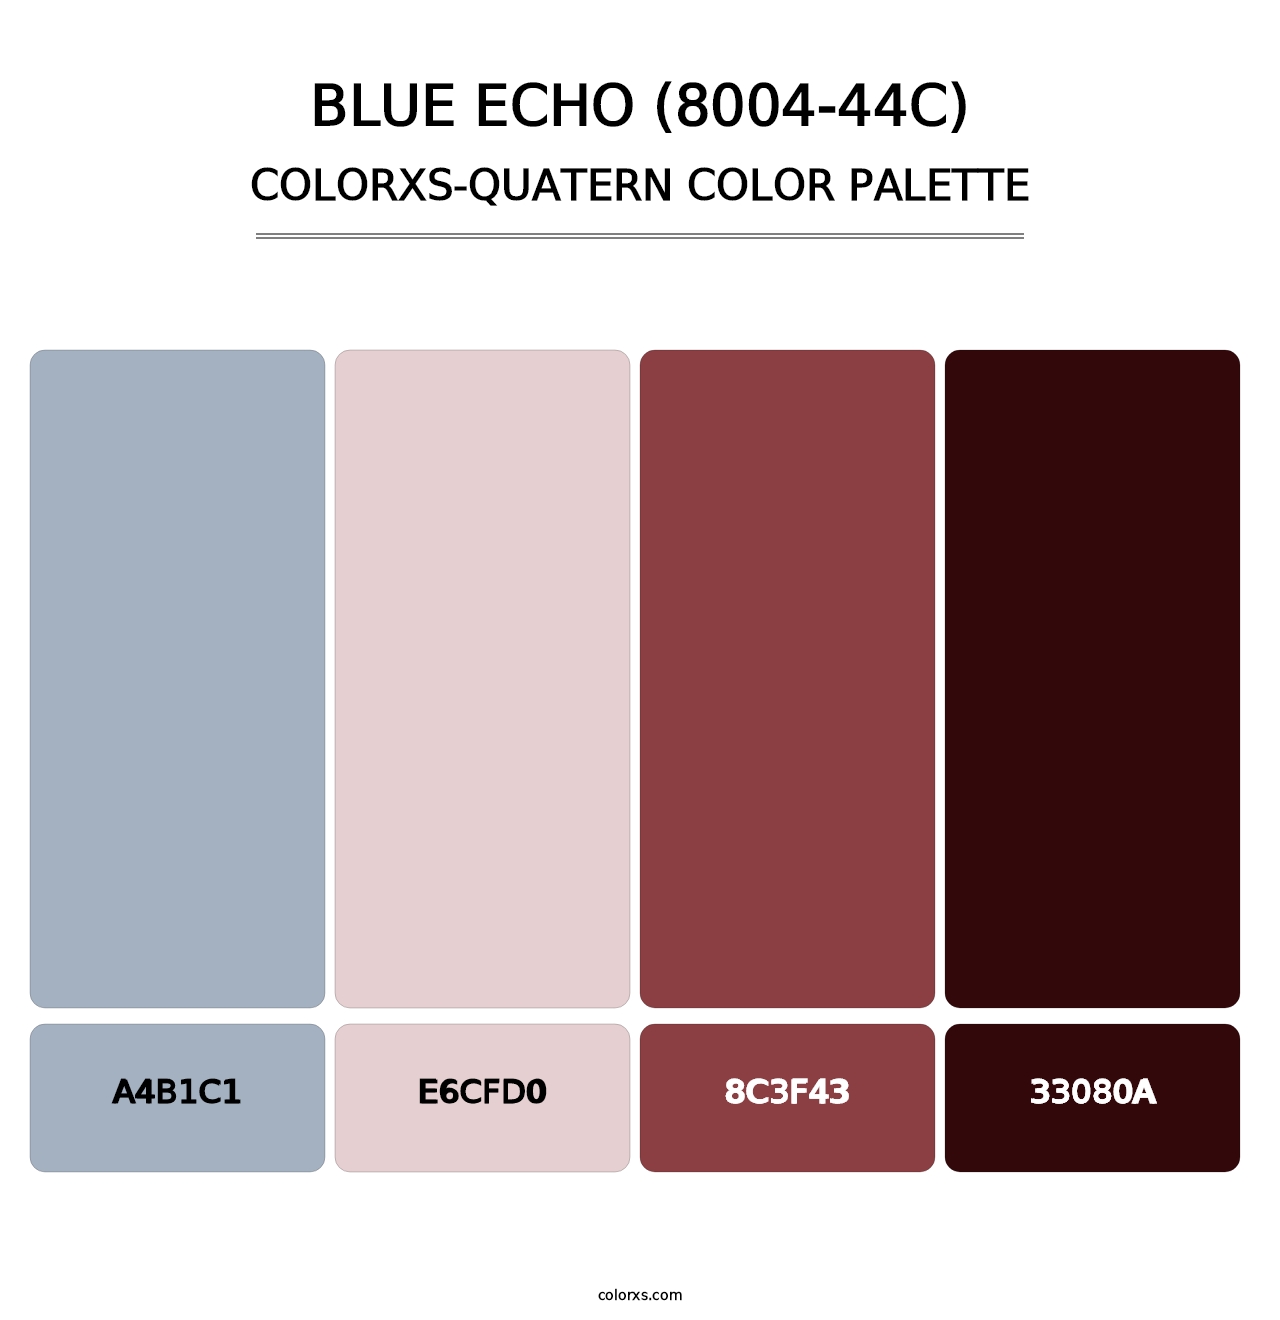 Blue Echo (8004-44C) - Colorxs Quatern Palette